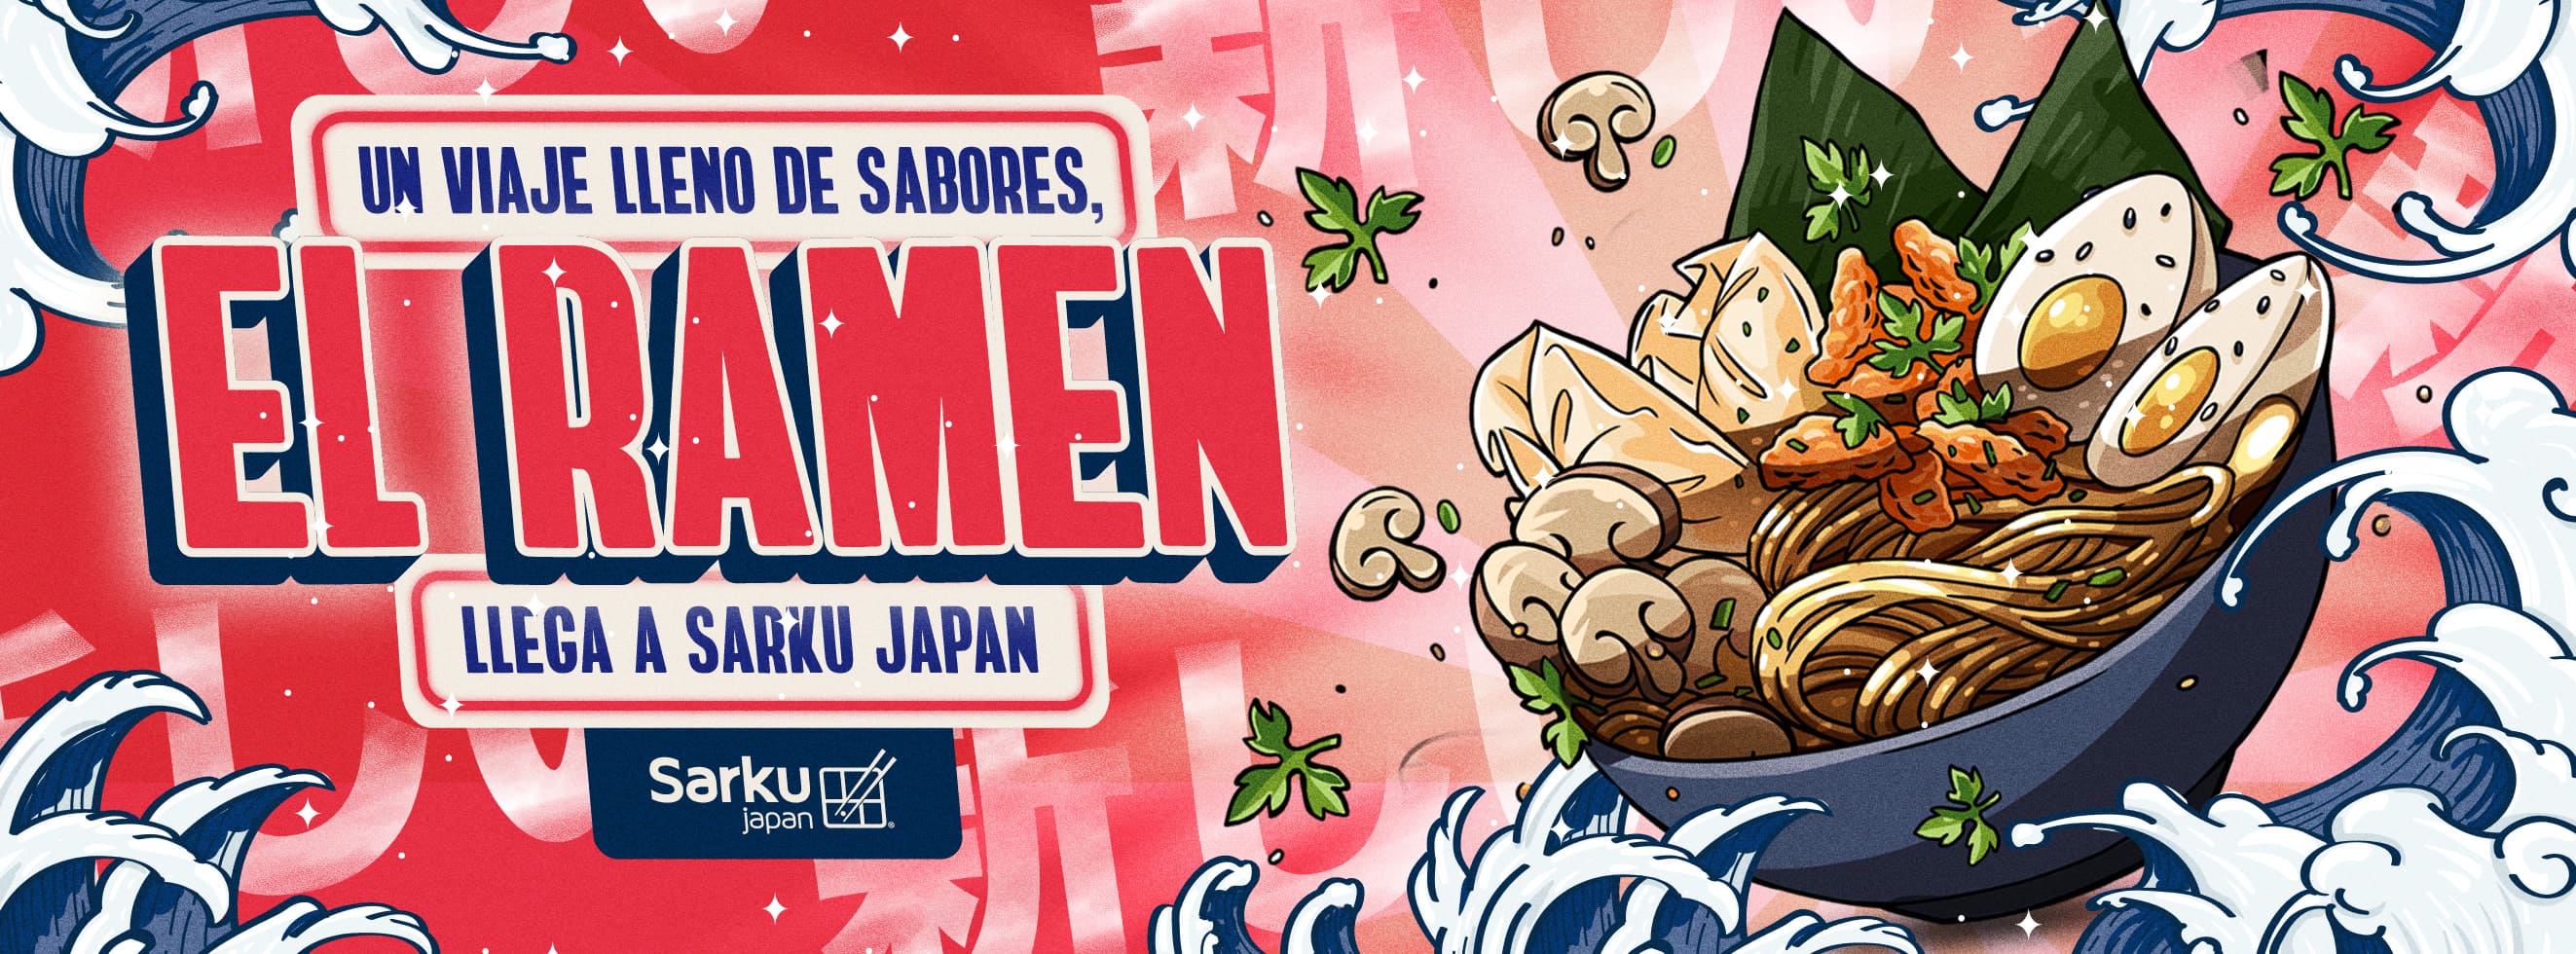 Un viaje lleno de sabores, el ramen llega a Sarku Japan